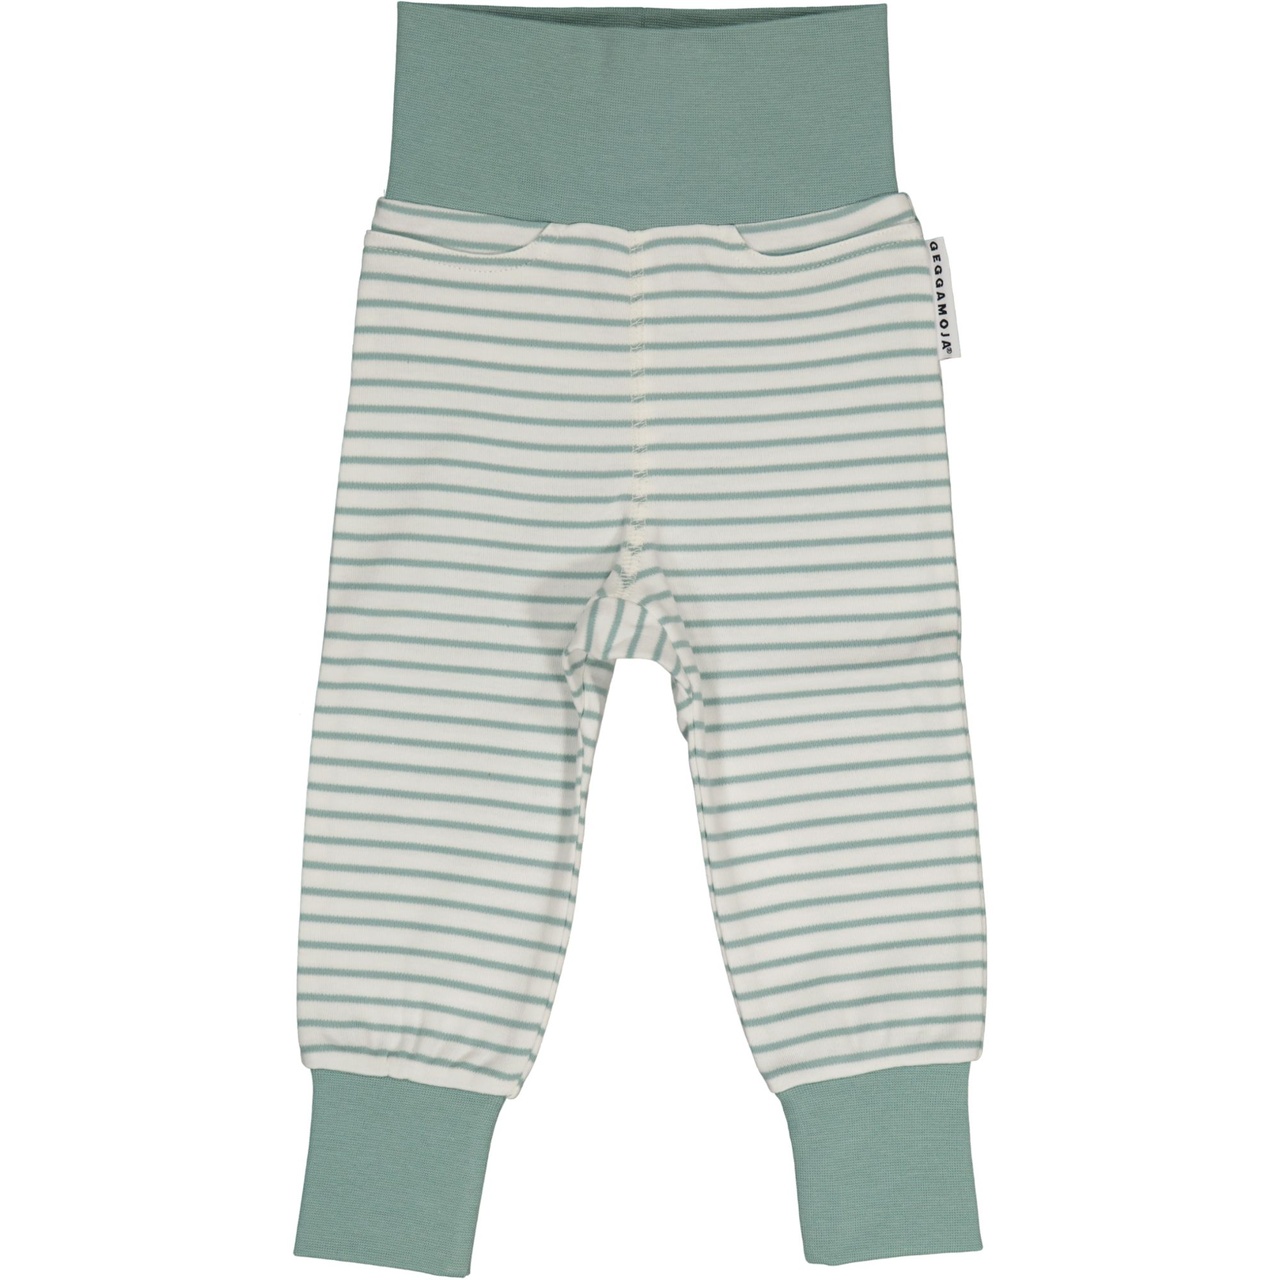 Vauvan housut L.vihreä/offvalkoinen